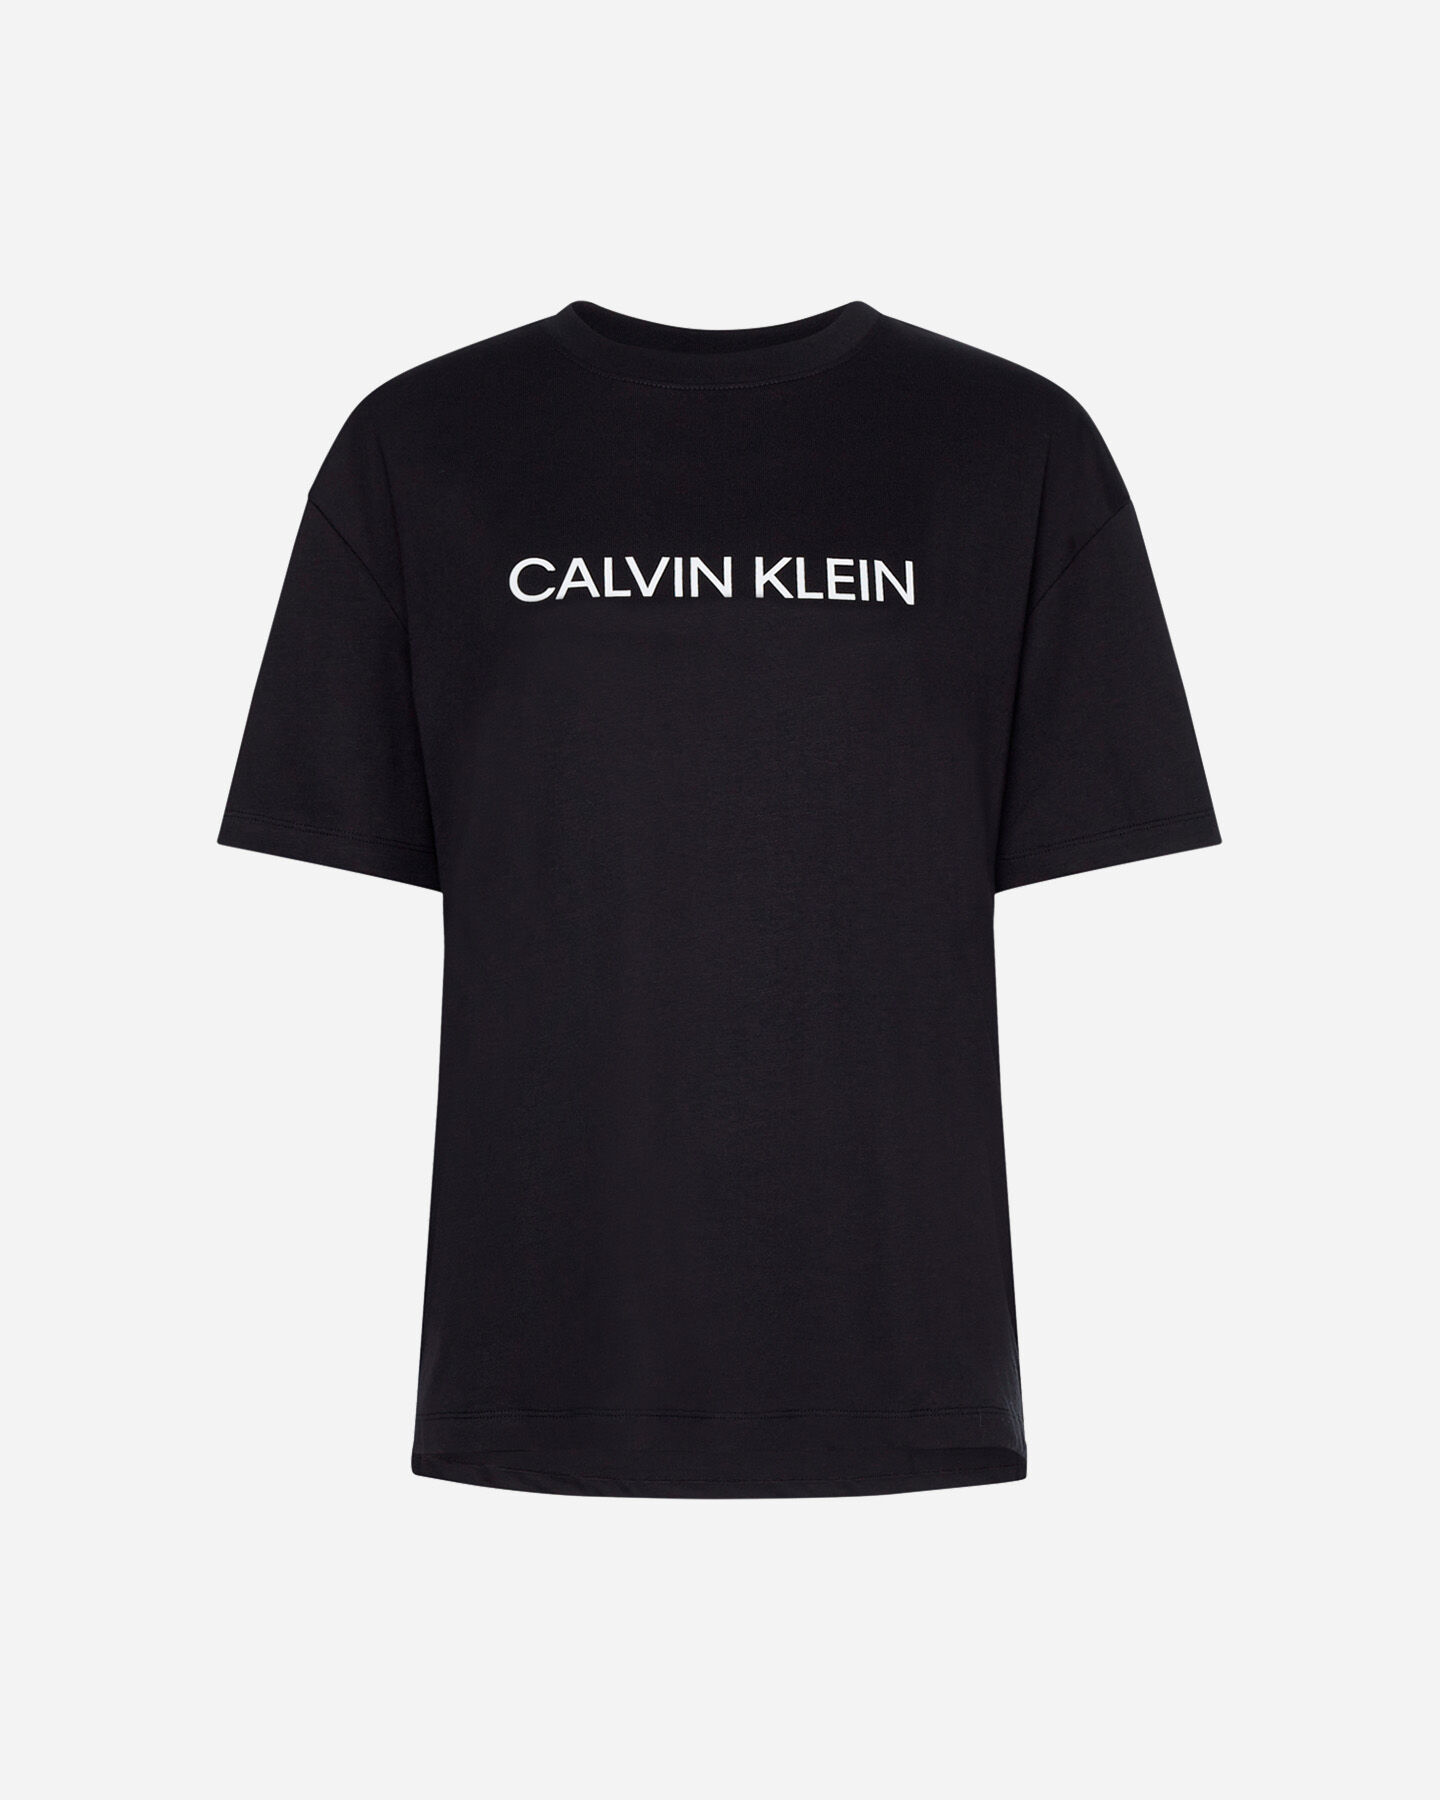  T-Shirt CALVIN KLEIN SPORT BIG LOGO W S4094659|001|XS scatto 0